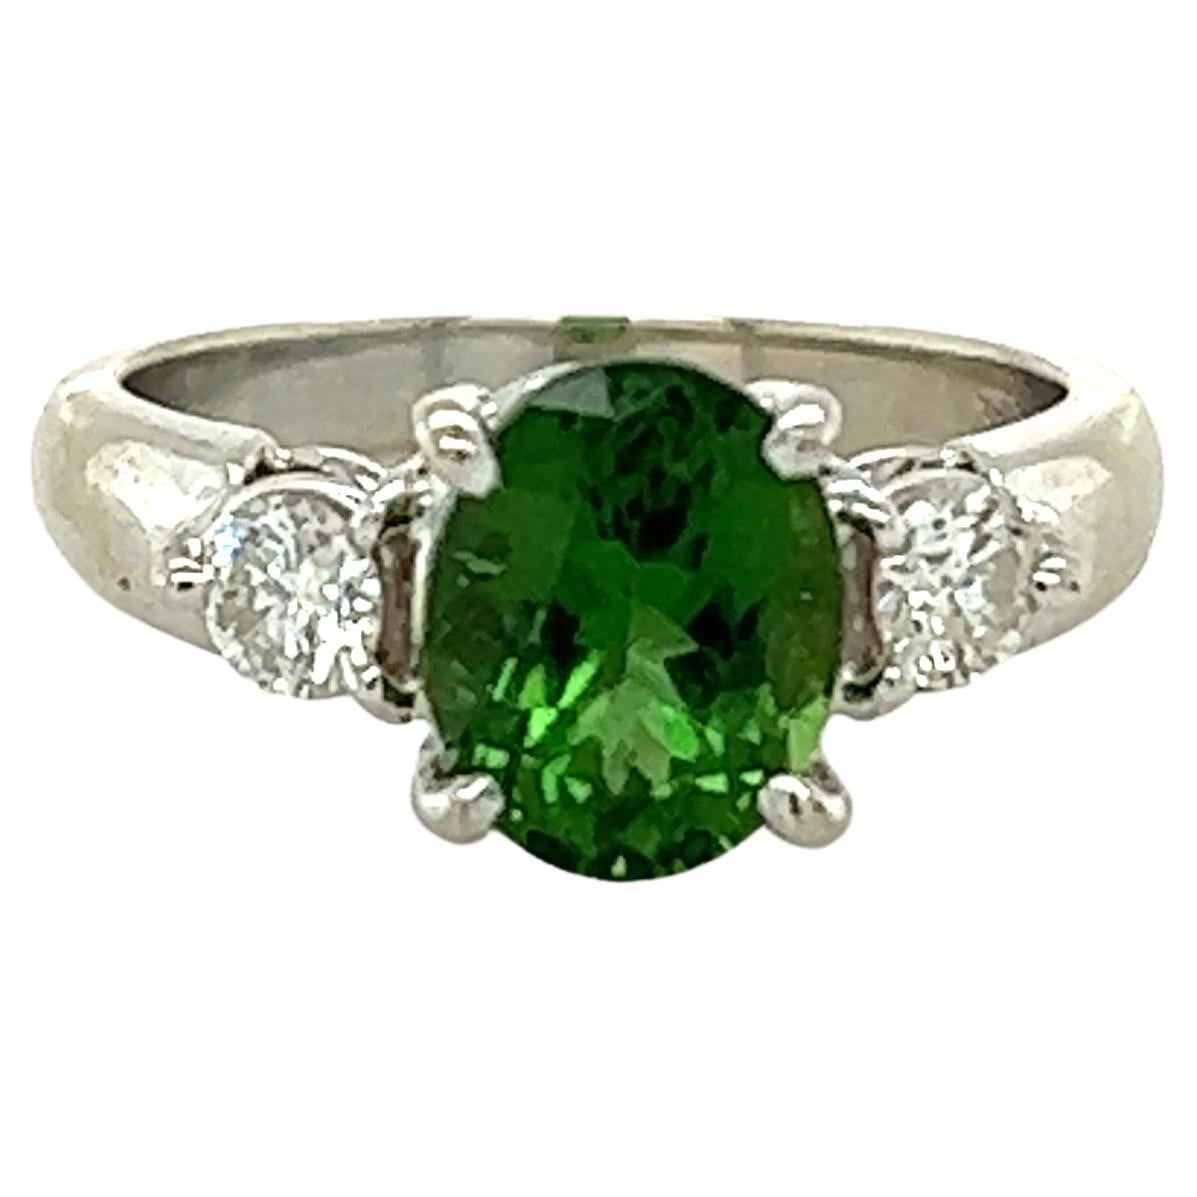 Tsavorite Garnet & Diamond 3 Stone Engagement Ring in 14k White Gold